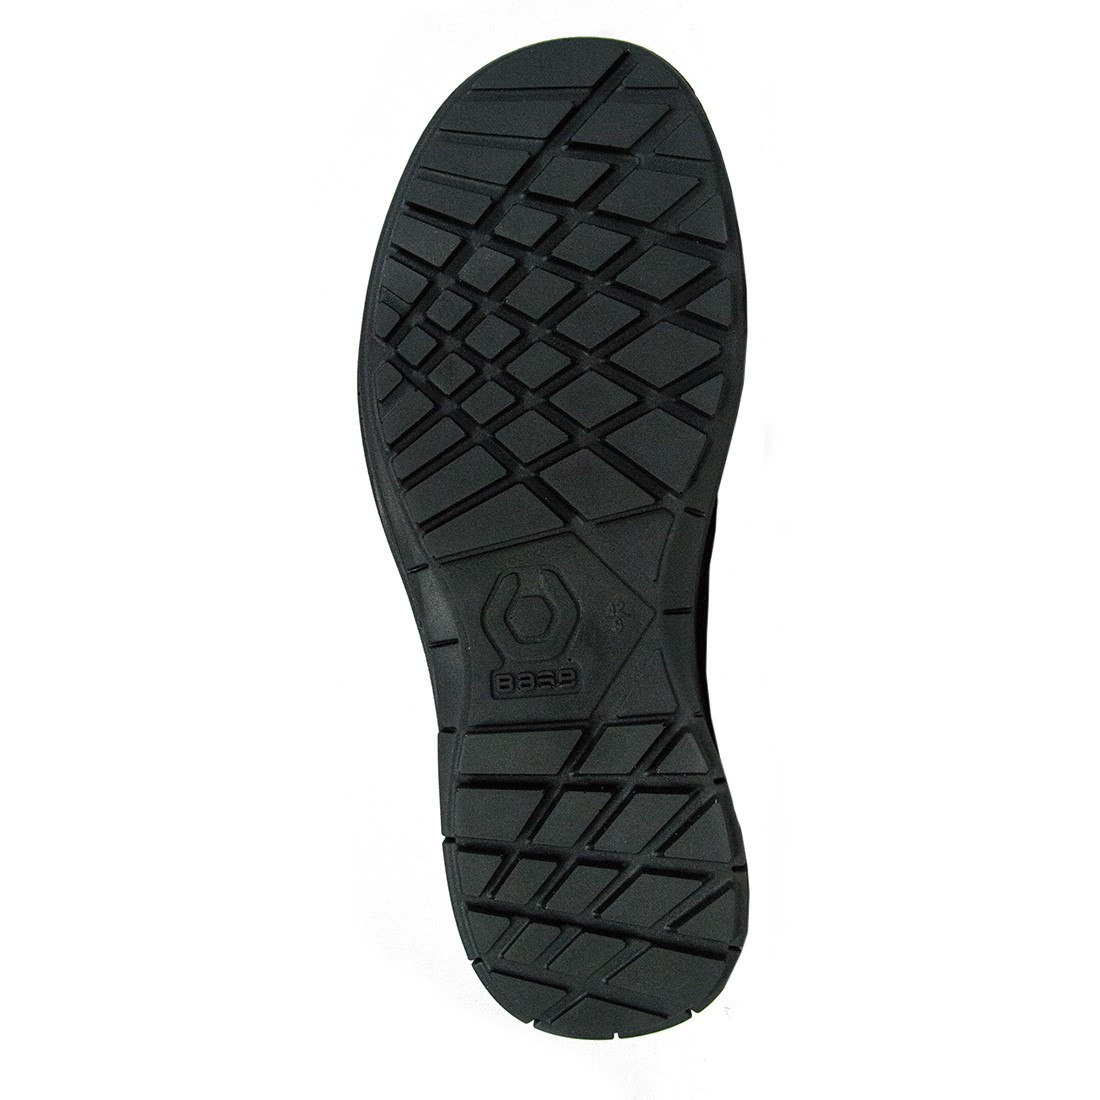 Pantofi Pulsar S1P SRC - Incaltaminte de protectie | Bocanci, Pantofi, Sandale, Cizme